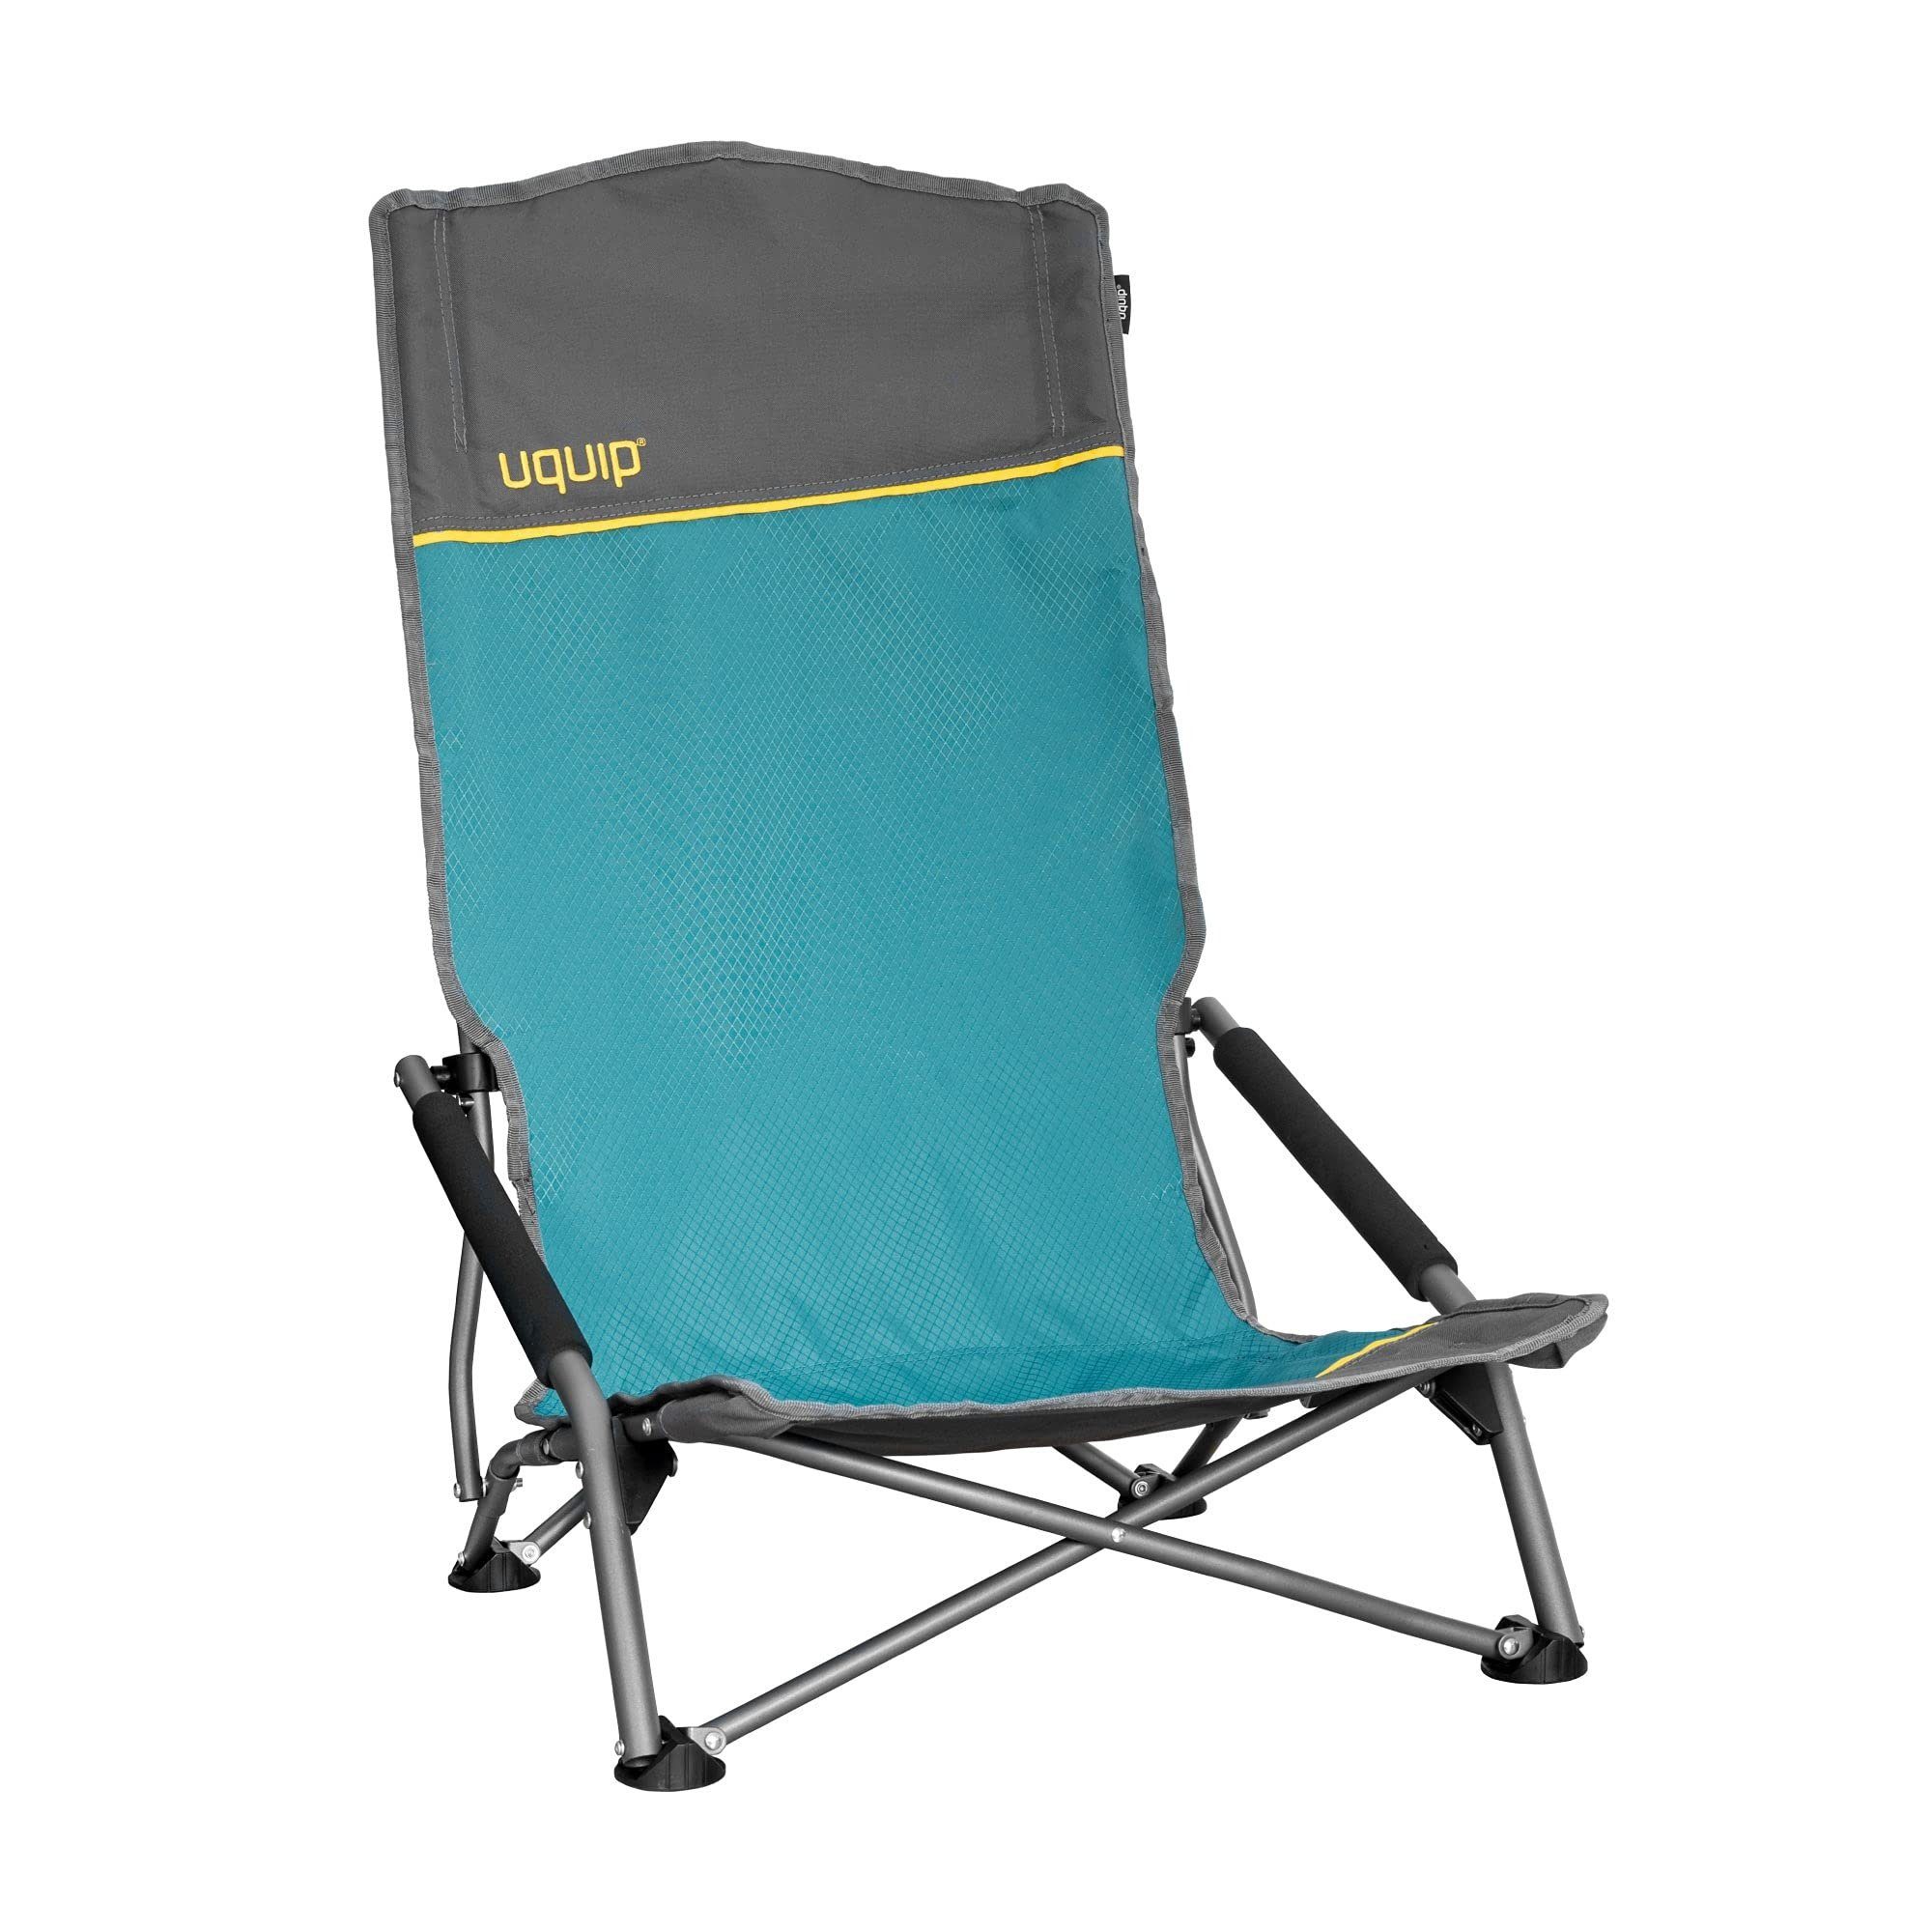 UQUIP Campingstuhl Sandy XL - Bequemer Strandstuhl mit extra hoher  Rückenlehne, extre hohe Rückenlehne, extra tiefer Sitz, breite Füße gegen  Einsinken in weichen Boden, gepolsterte Armlehnen